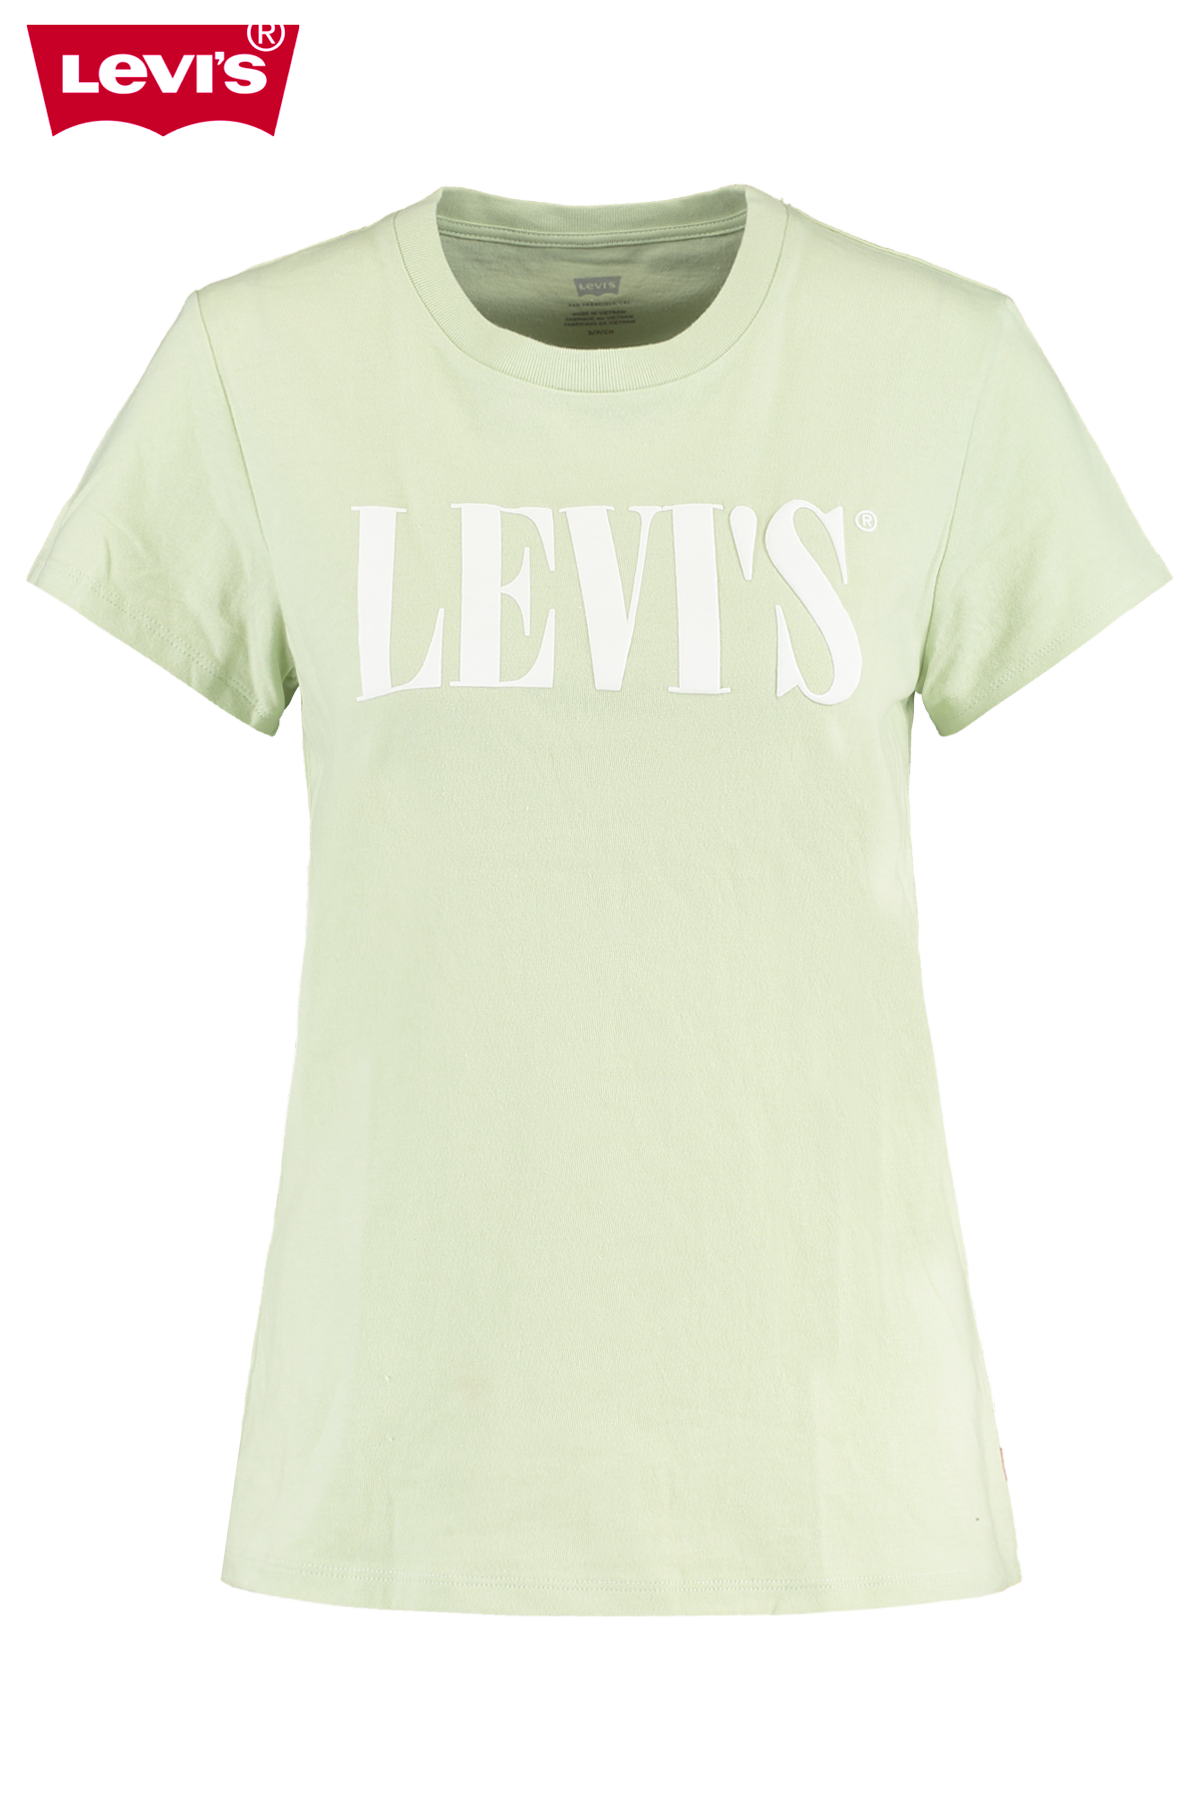 levis t shirt offer